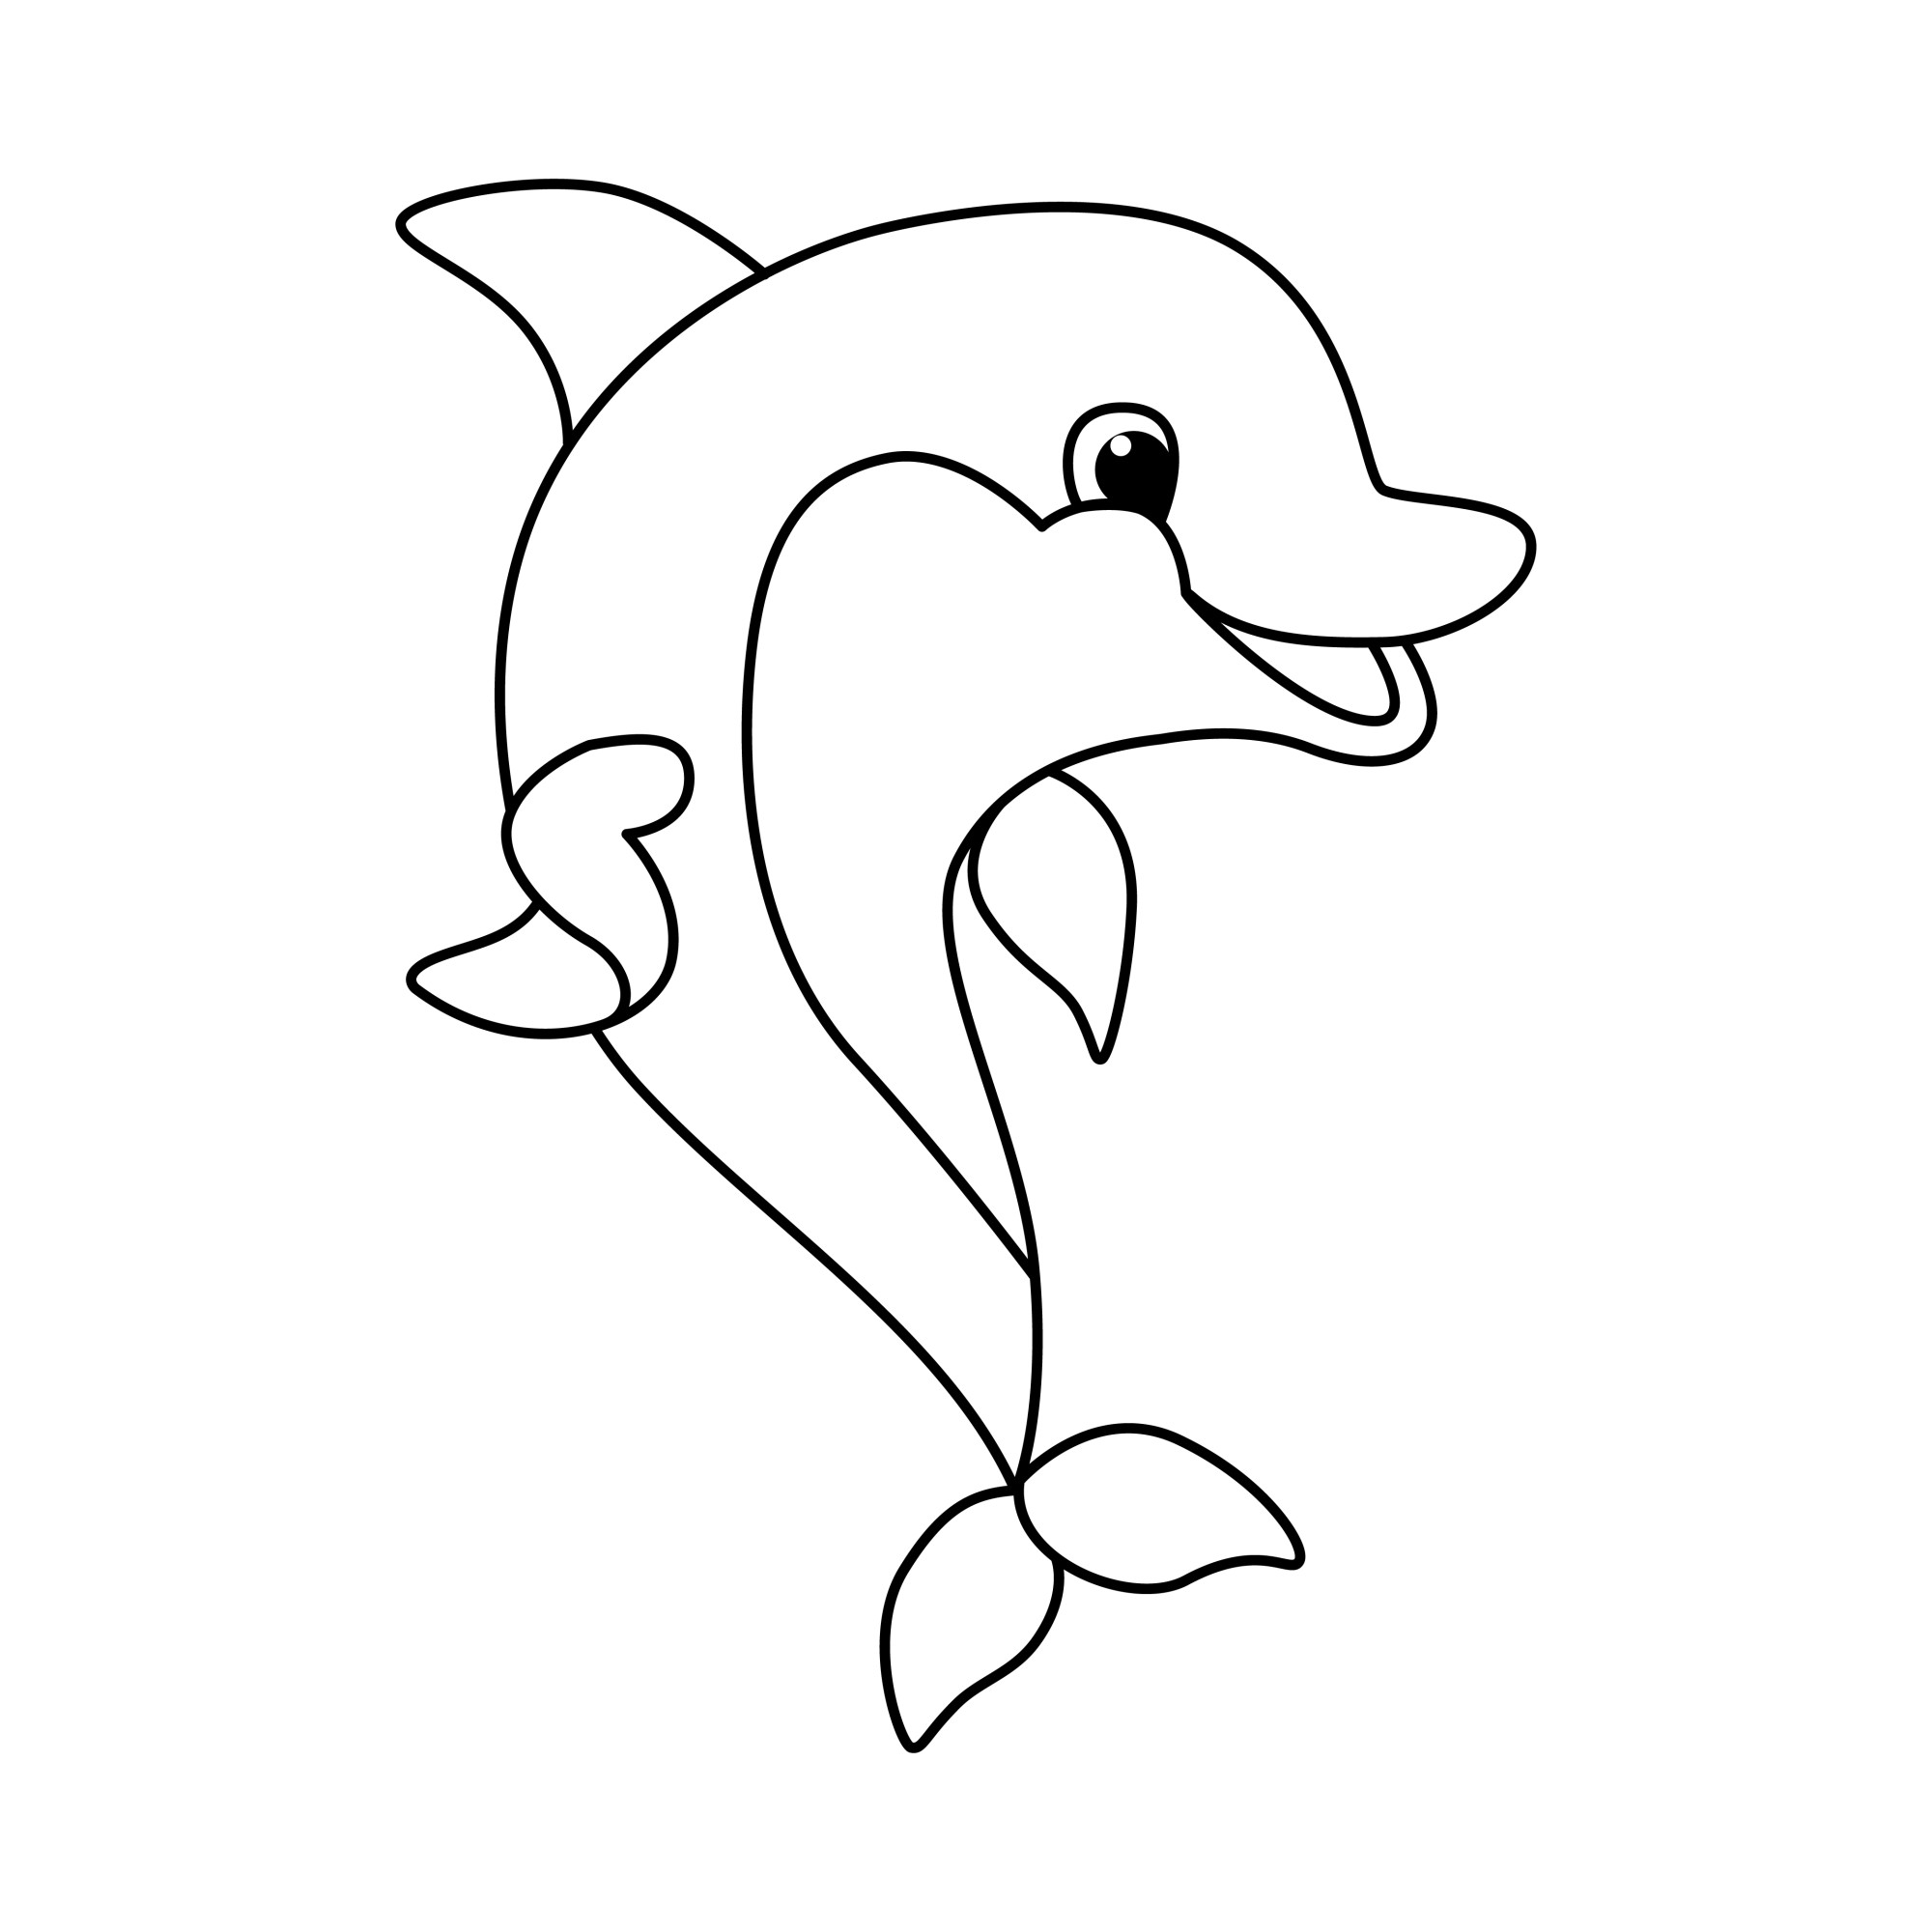 Раскраска для детей: смешной дельфин в прыжке